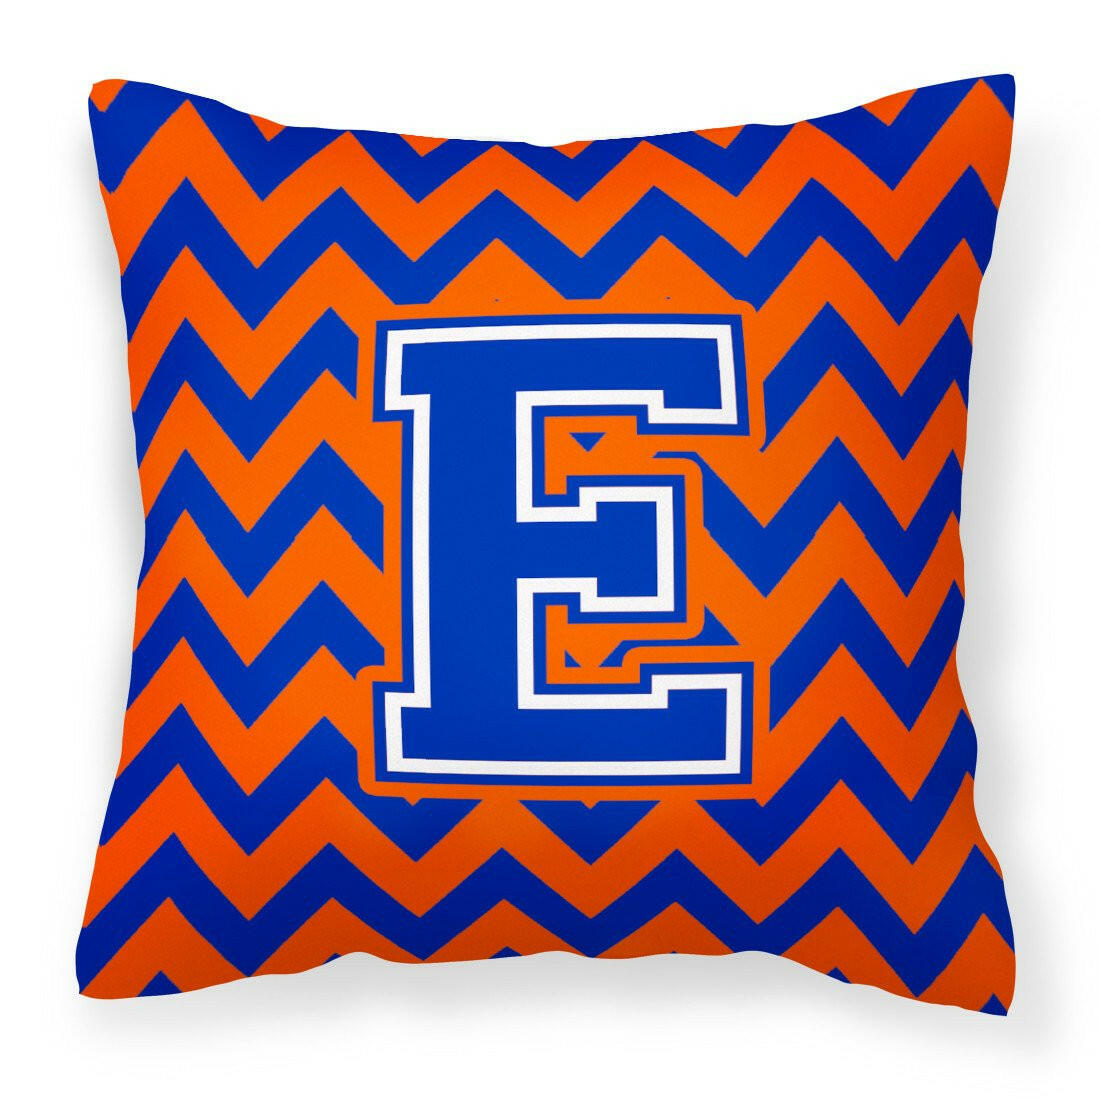 Letter E Chevron Orange and Blue Fabric Decorative Pillow CJ1044-EPW1414 - the-store.com